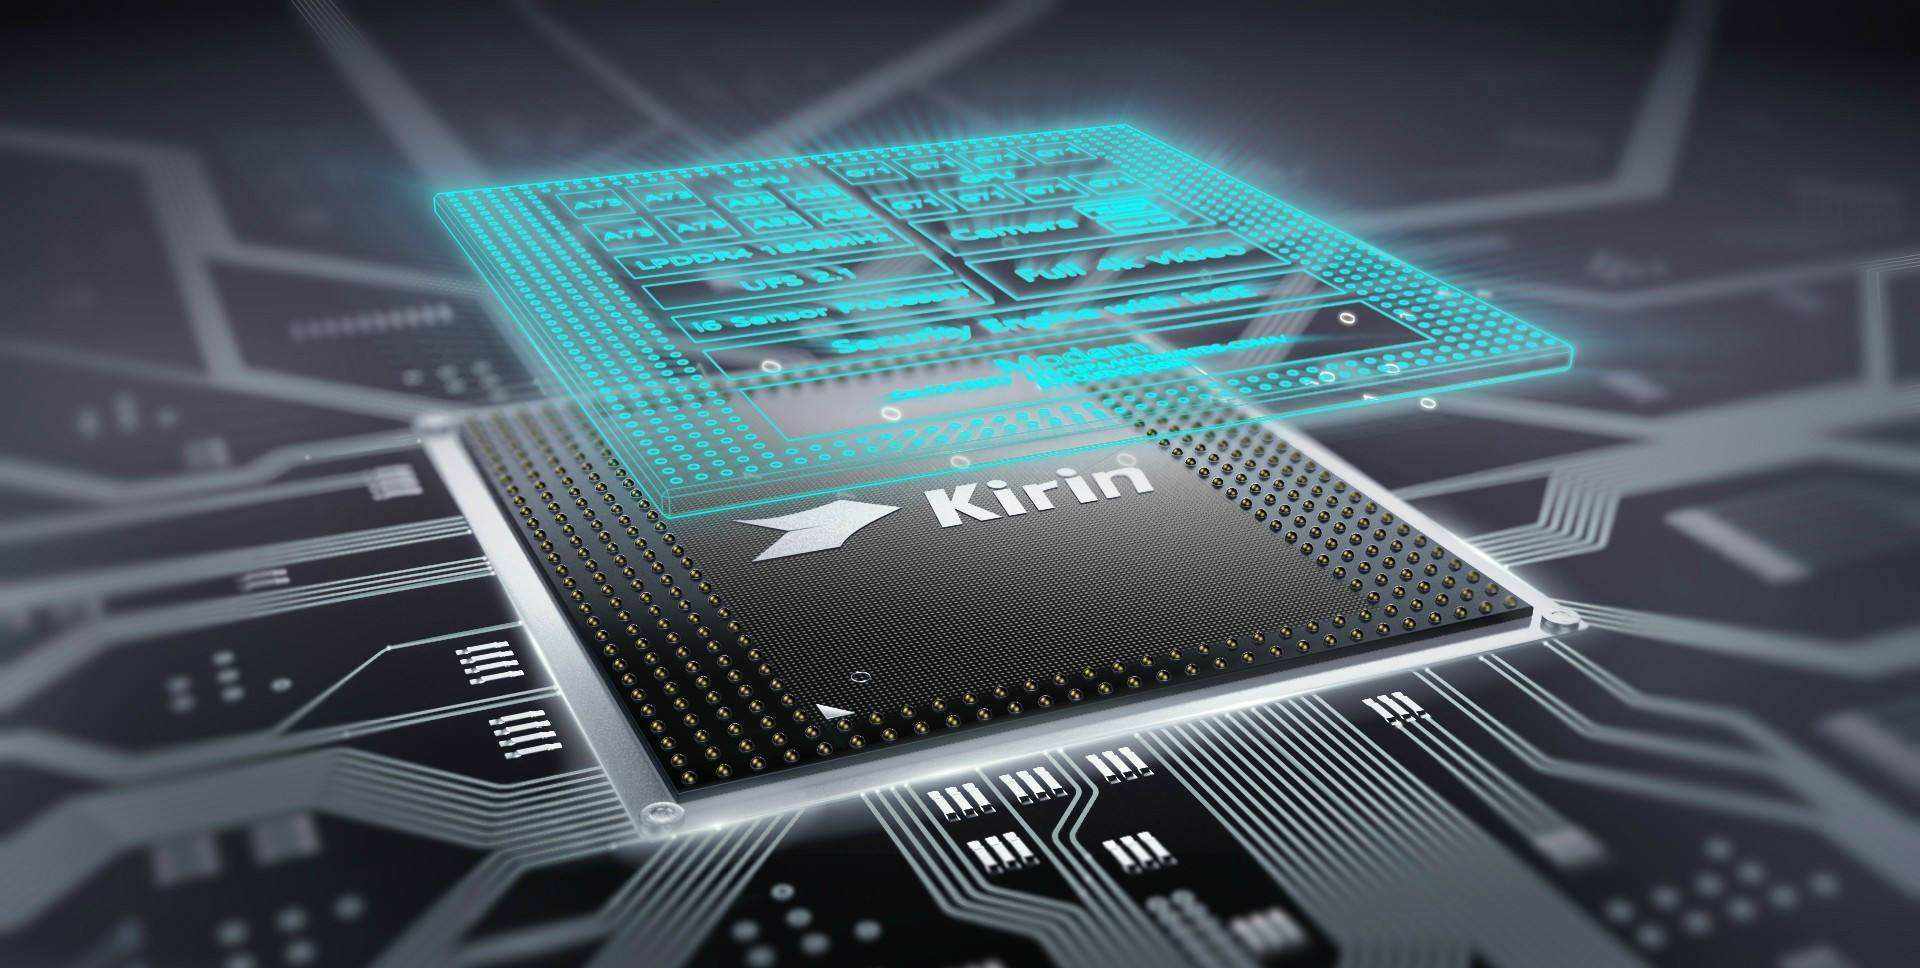 kirin980是什么处理器